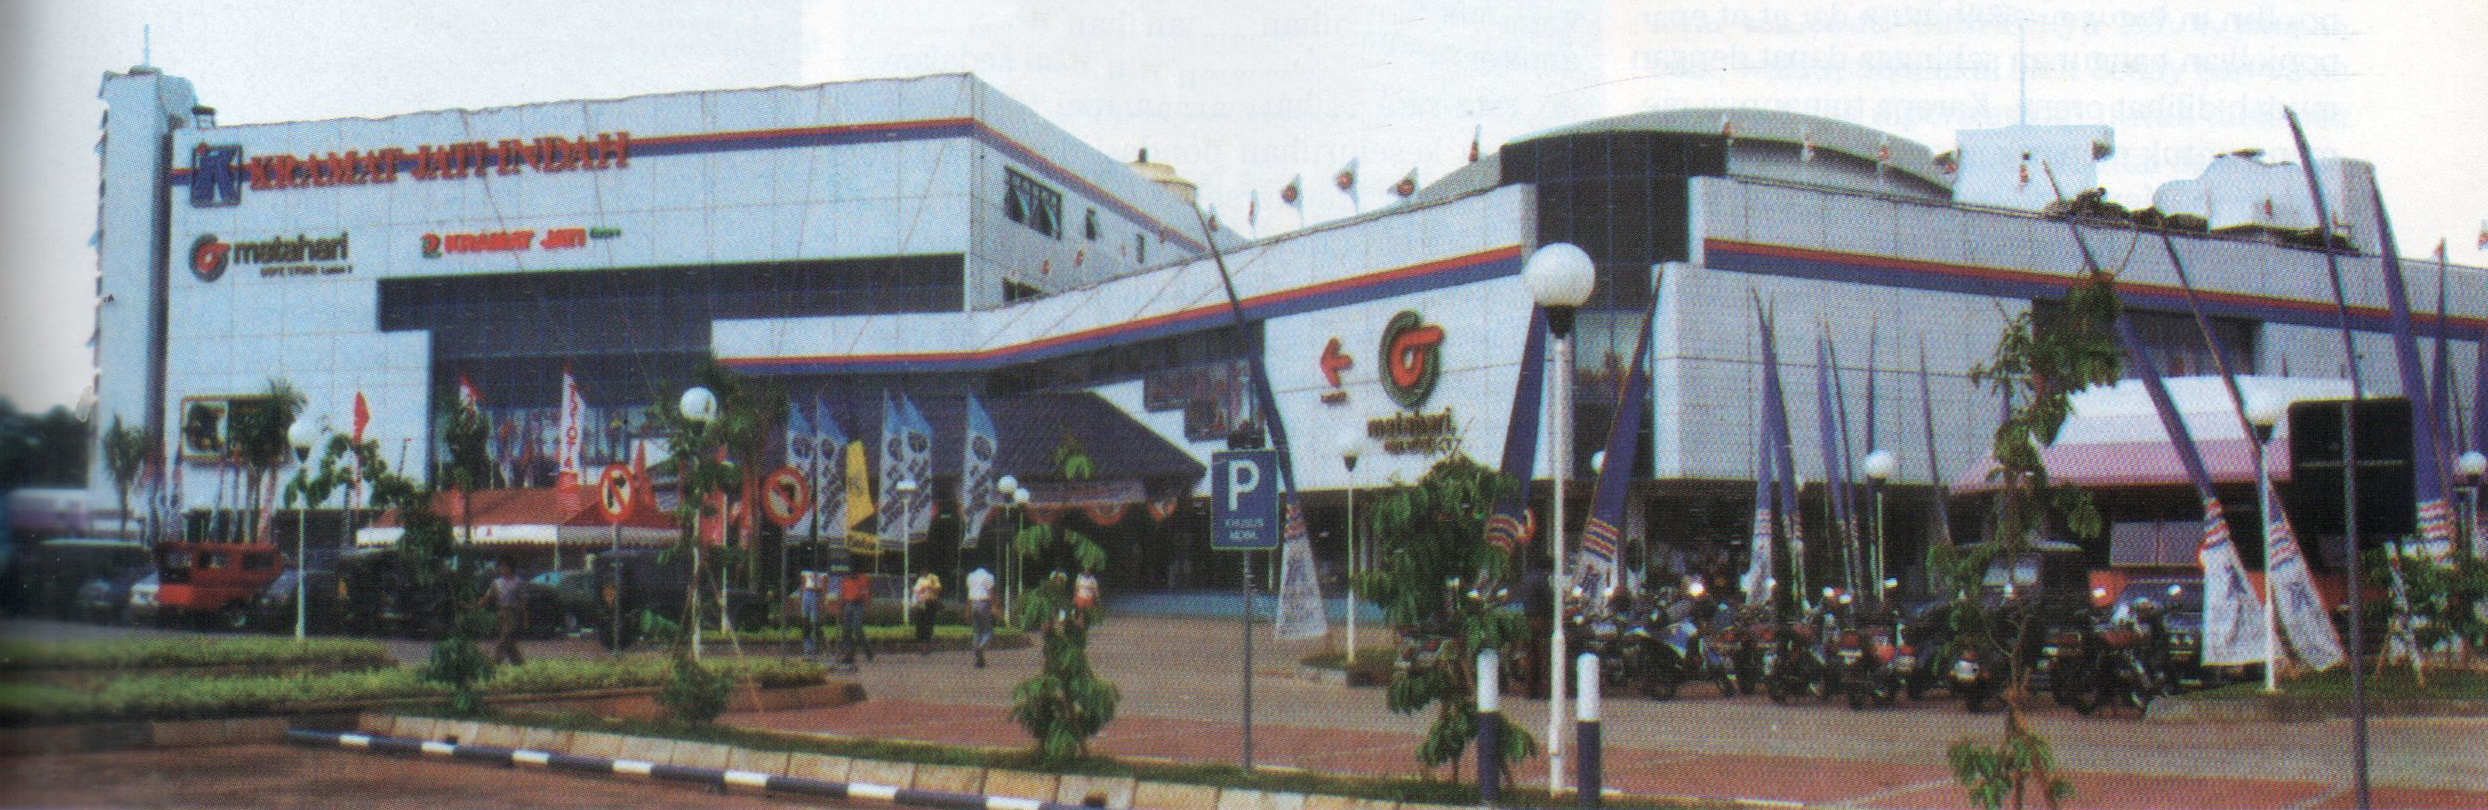 Lippo Plaza Kramat Jati